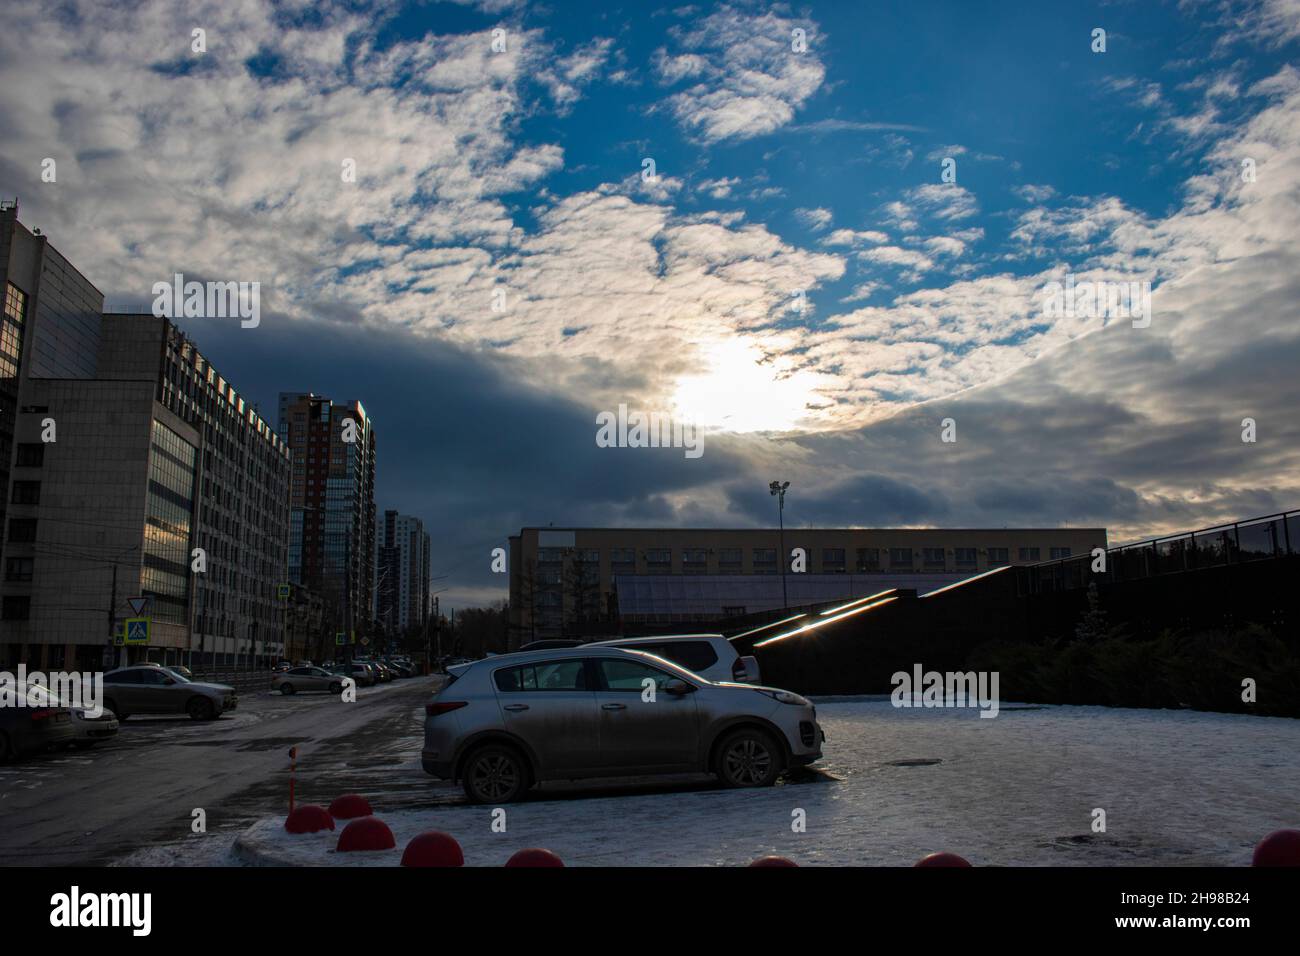 Scena urbana invernale. Un luogo con una strada, automobili ed edifici. Paesaggio cittadino. Foto Stock